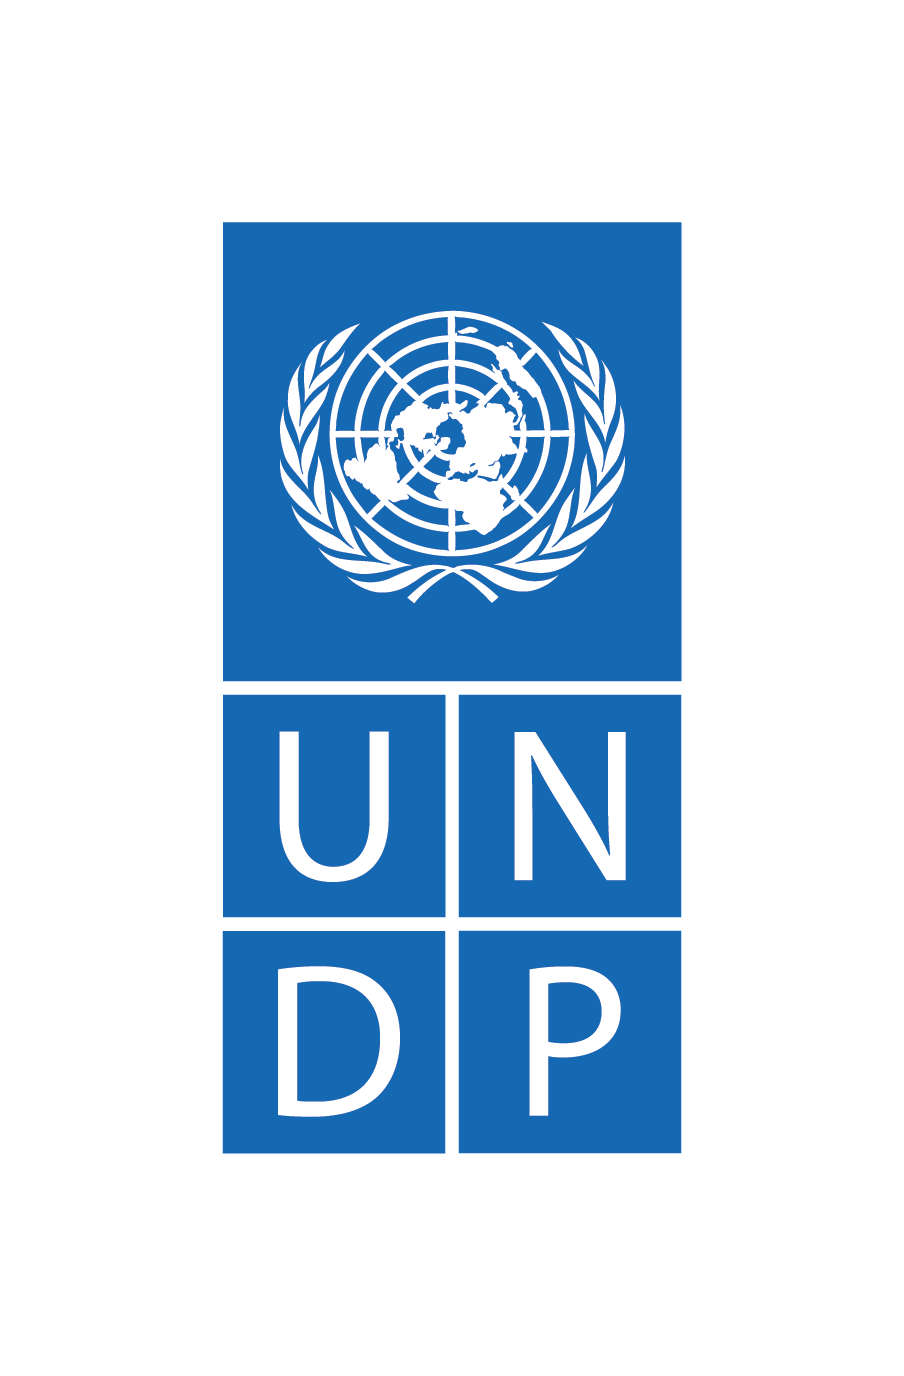 Image: logo de la Programme des Nations Unies pour le Developpement (PNUD)